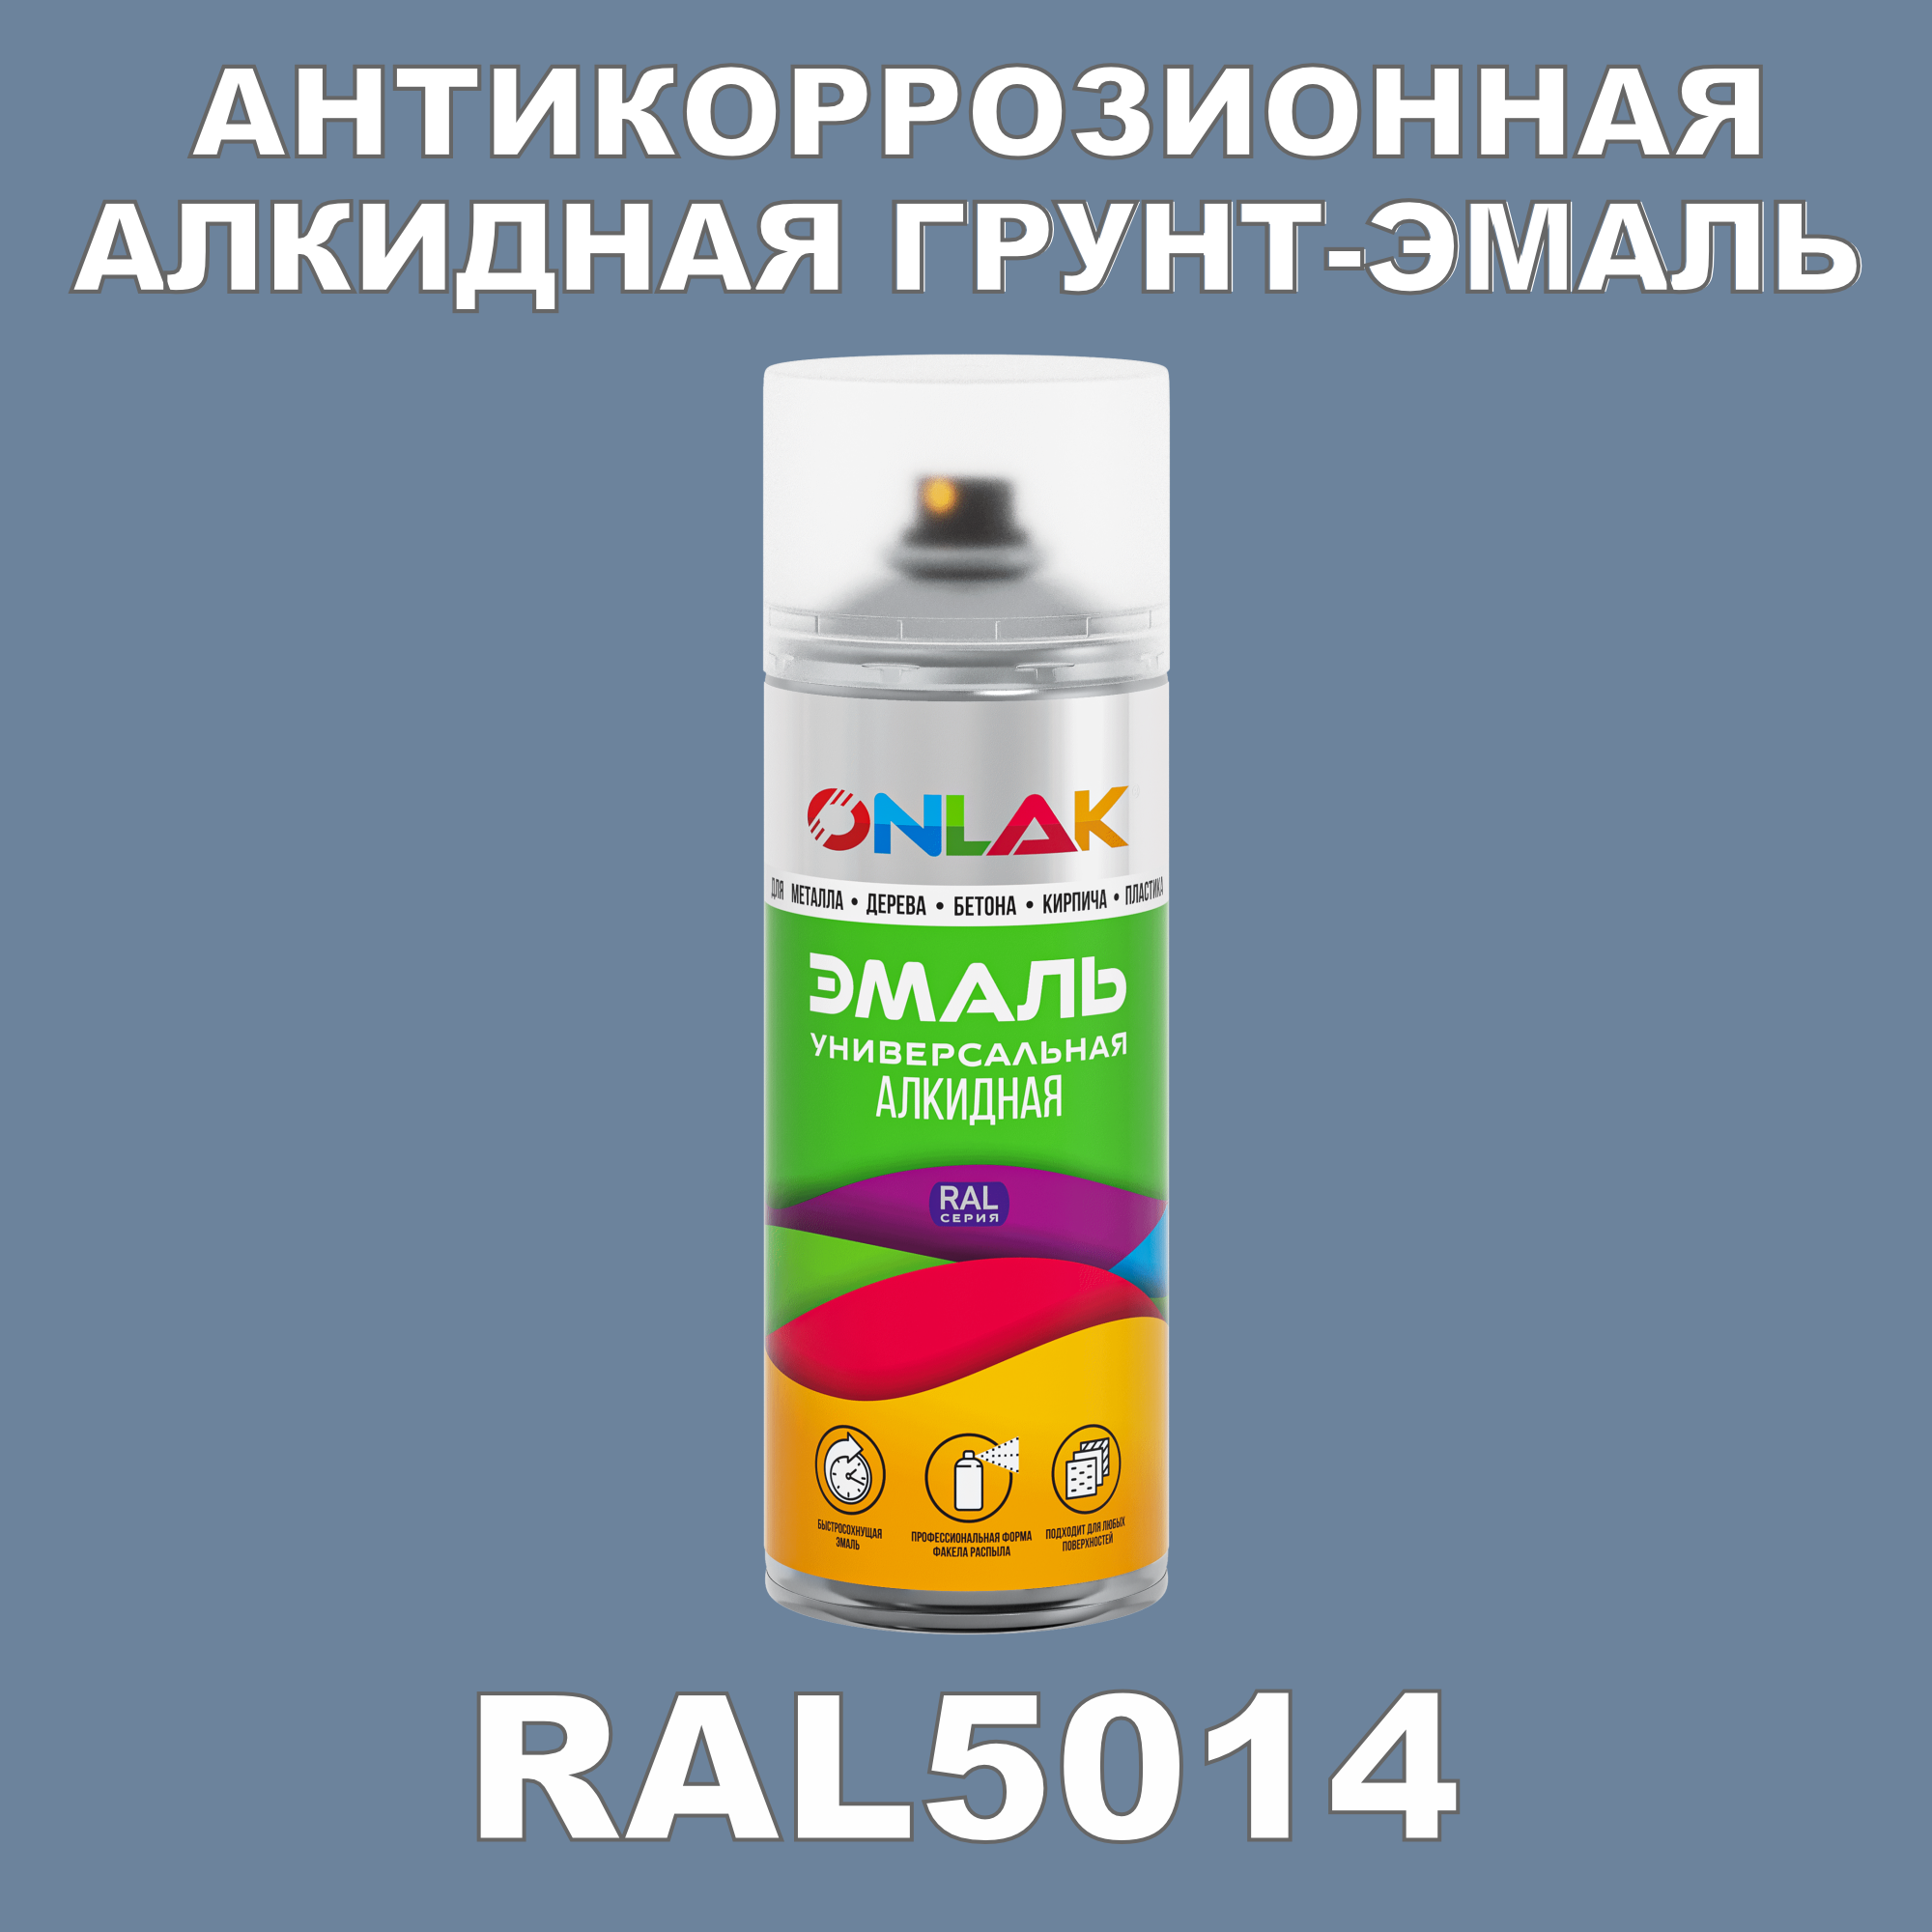 Антикоррозионная грунт-эмаль ONLAK RAL5014 полуматовая для металла и защиты от ржавчины